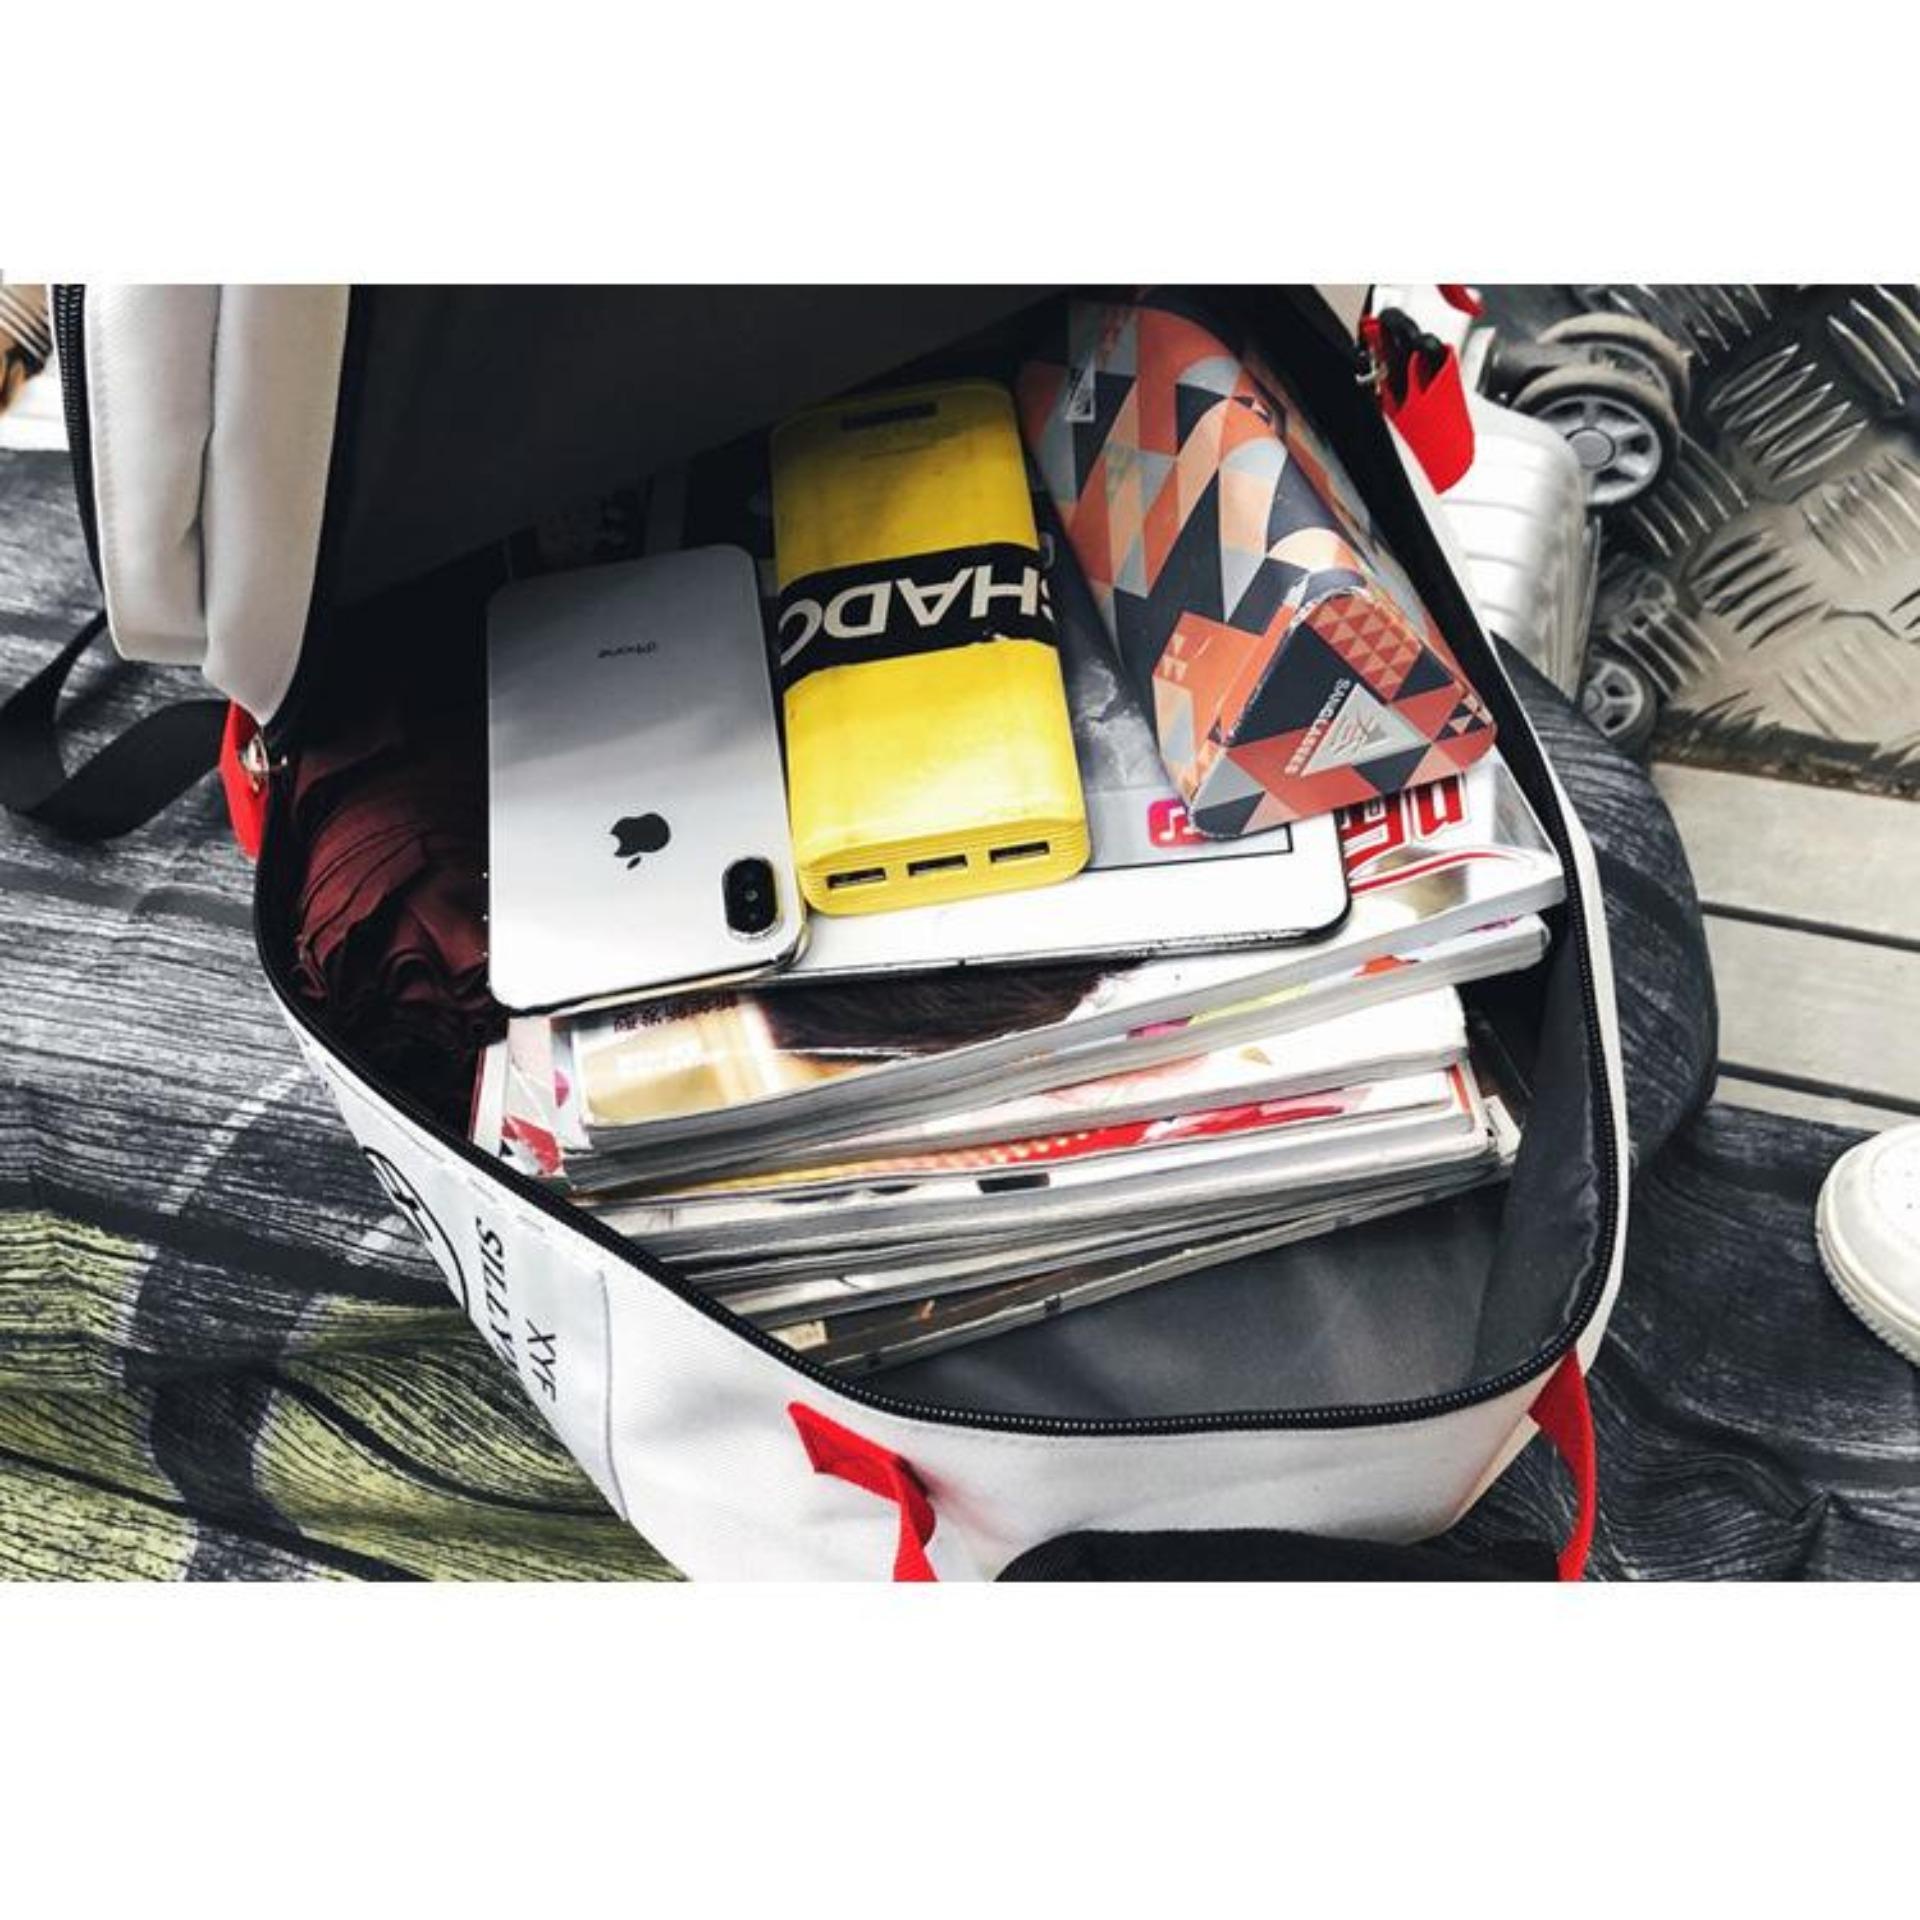 Balo nam nữ thời trang đi học hottrend 2019 có ngăn chứa laptop phong cách style HÀN QUỐC (Đen) B1